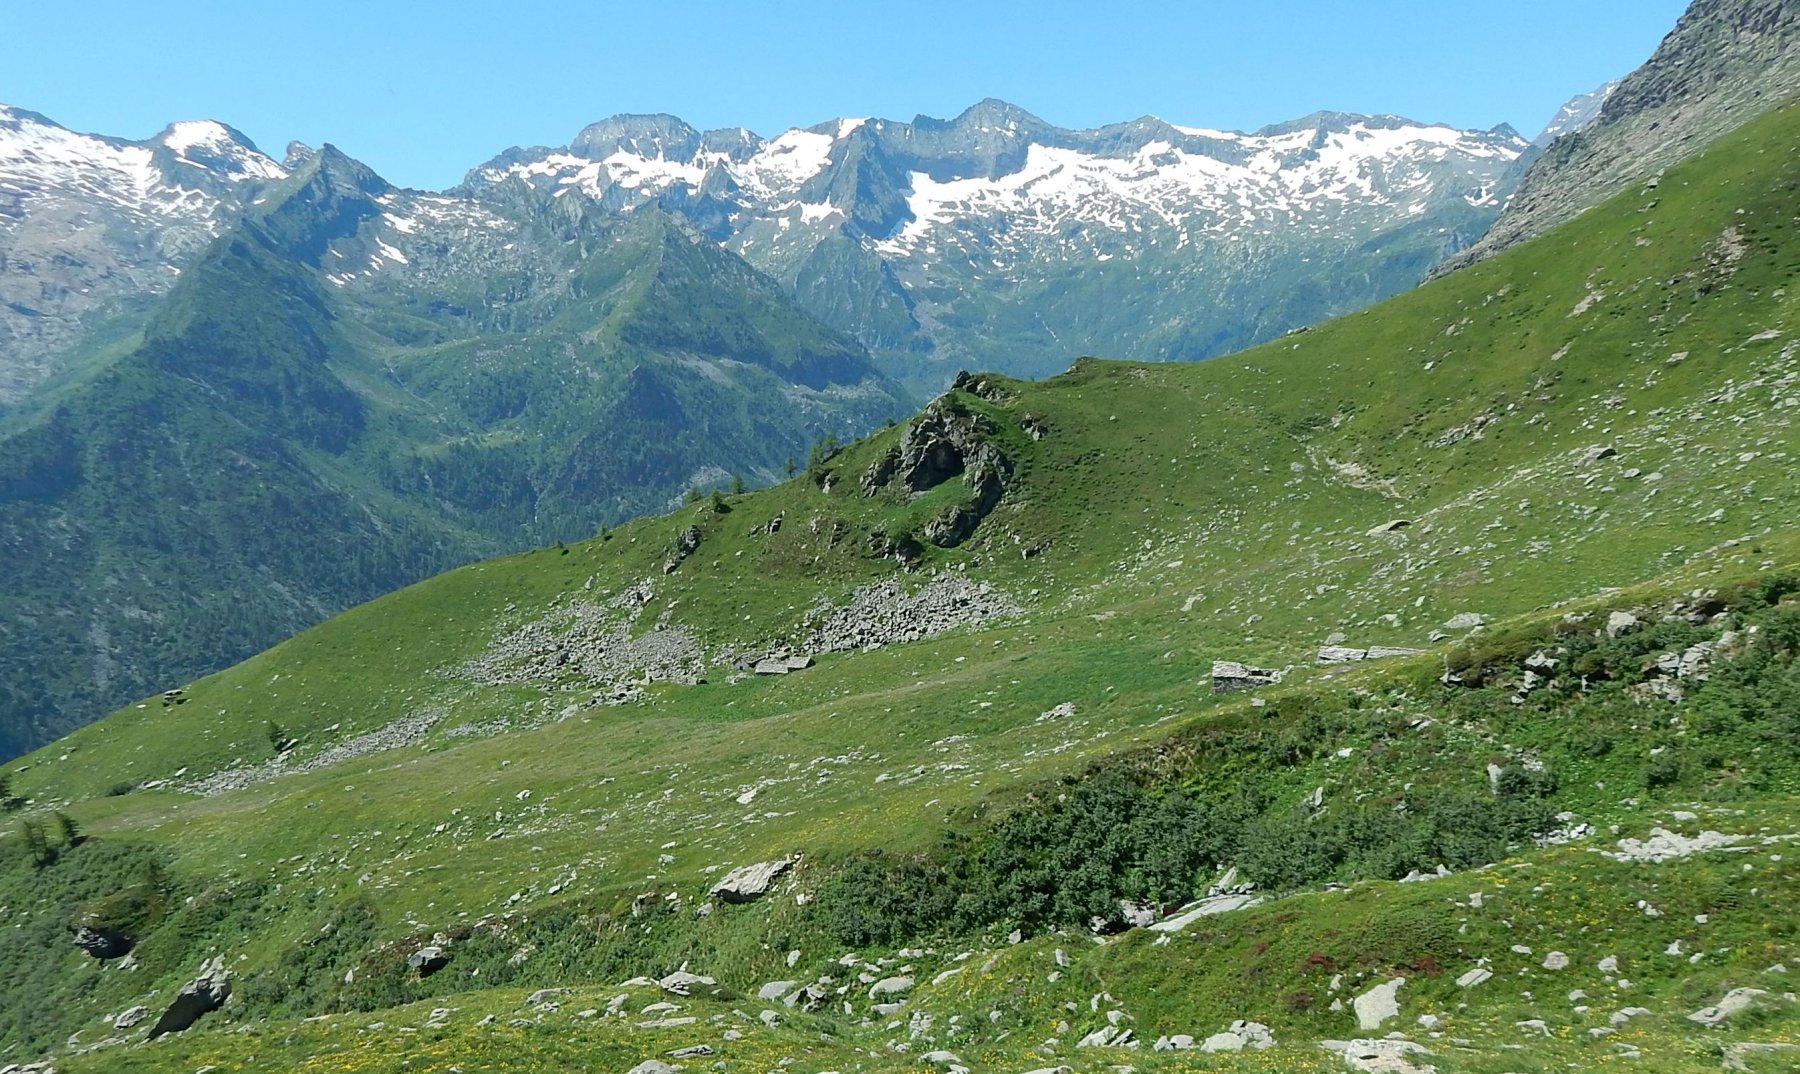  Si vede la traccia che arriva all'Alpe Pian delle Mule